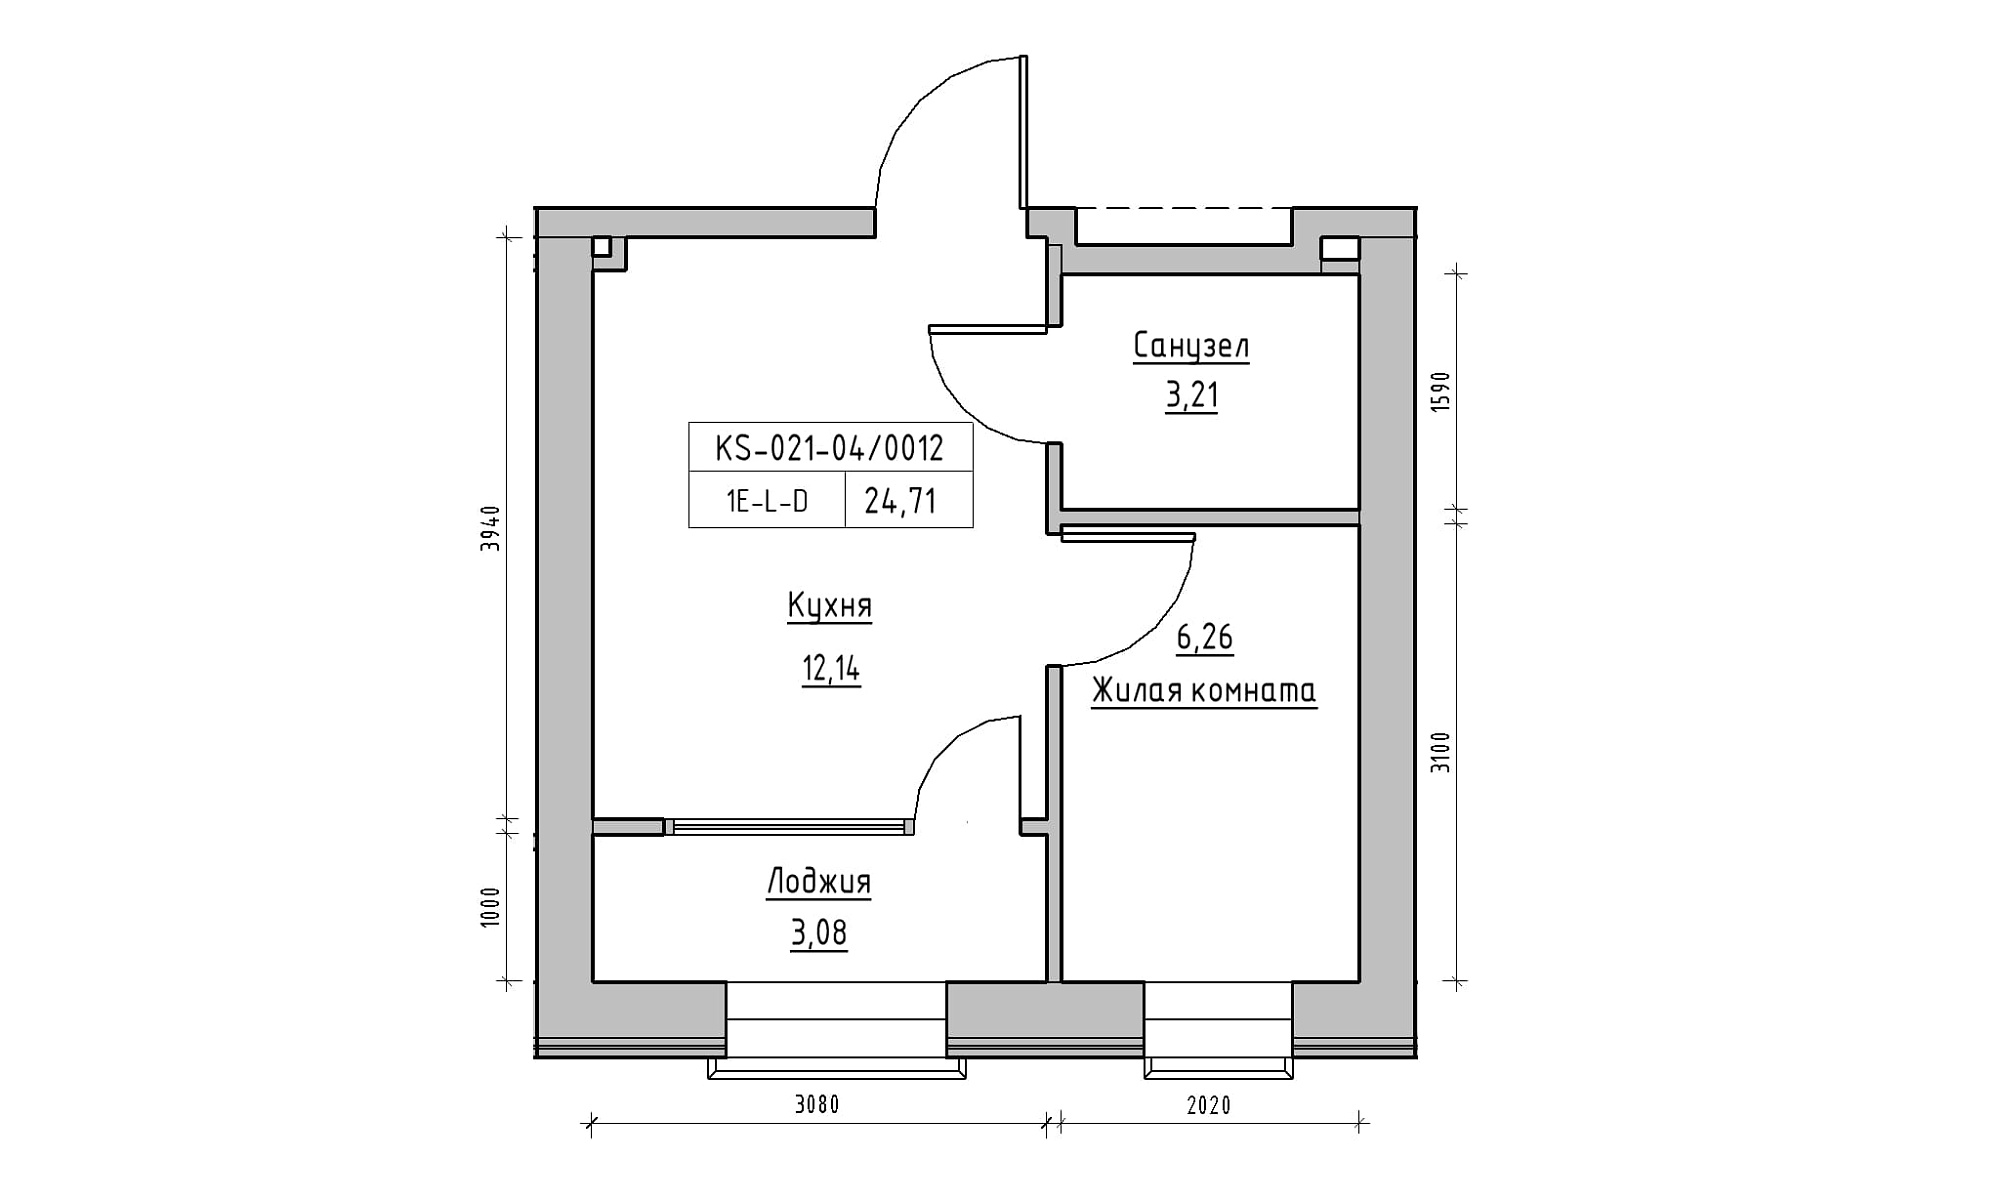 Планування 1-к квартира площею 24.71м2, KS-021-04/0012.